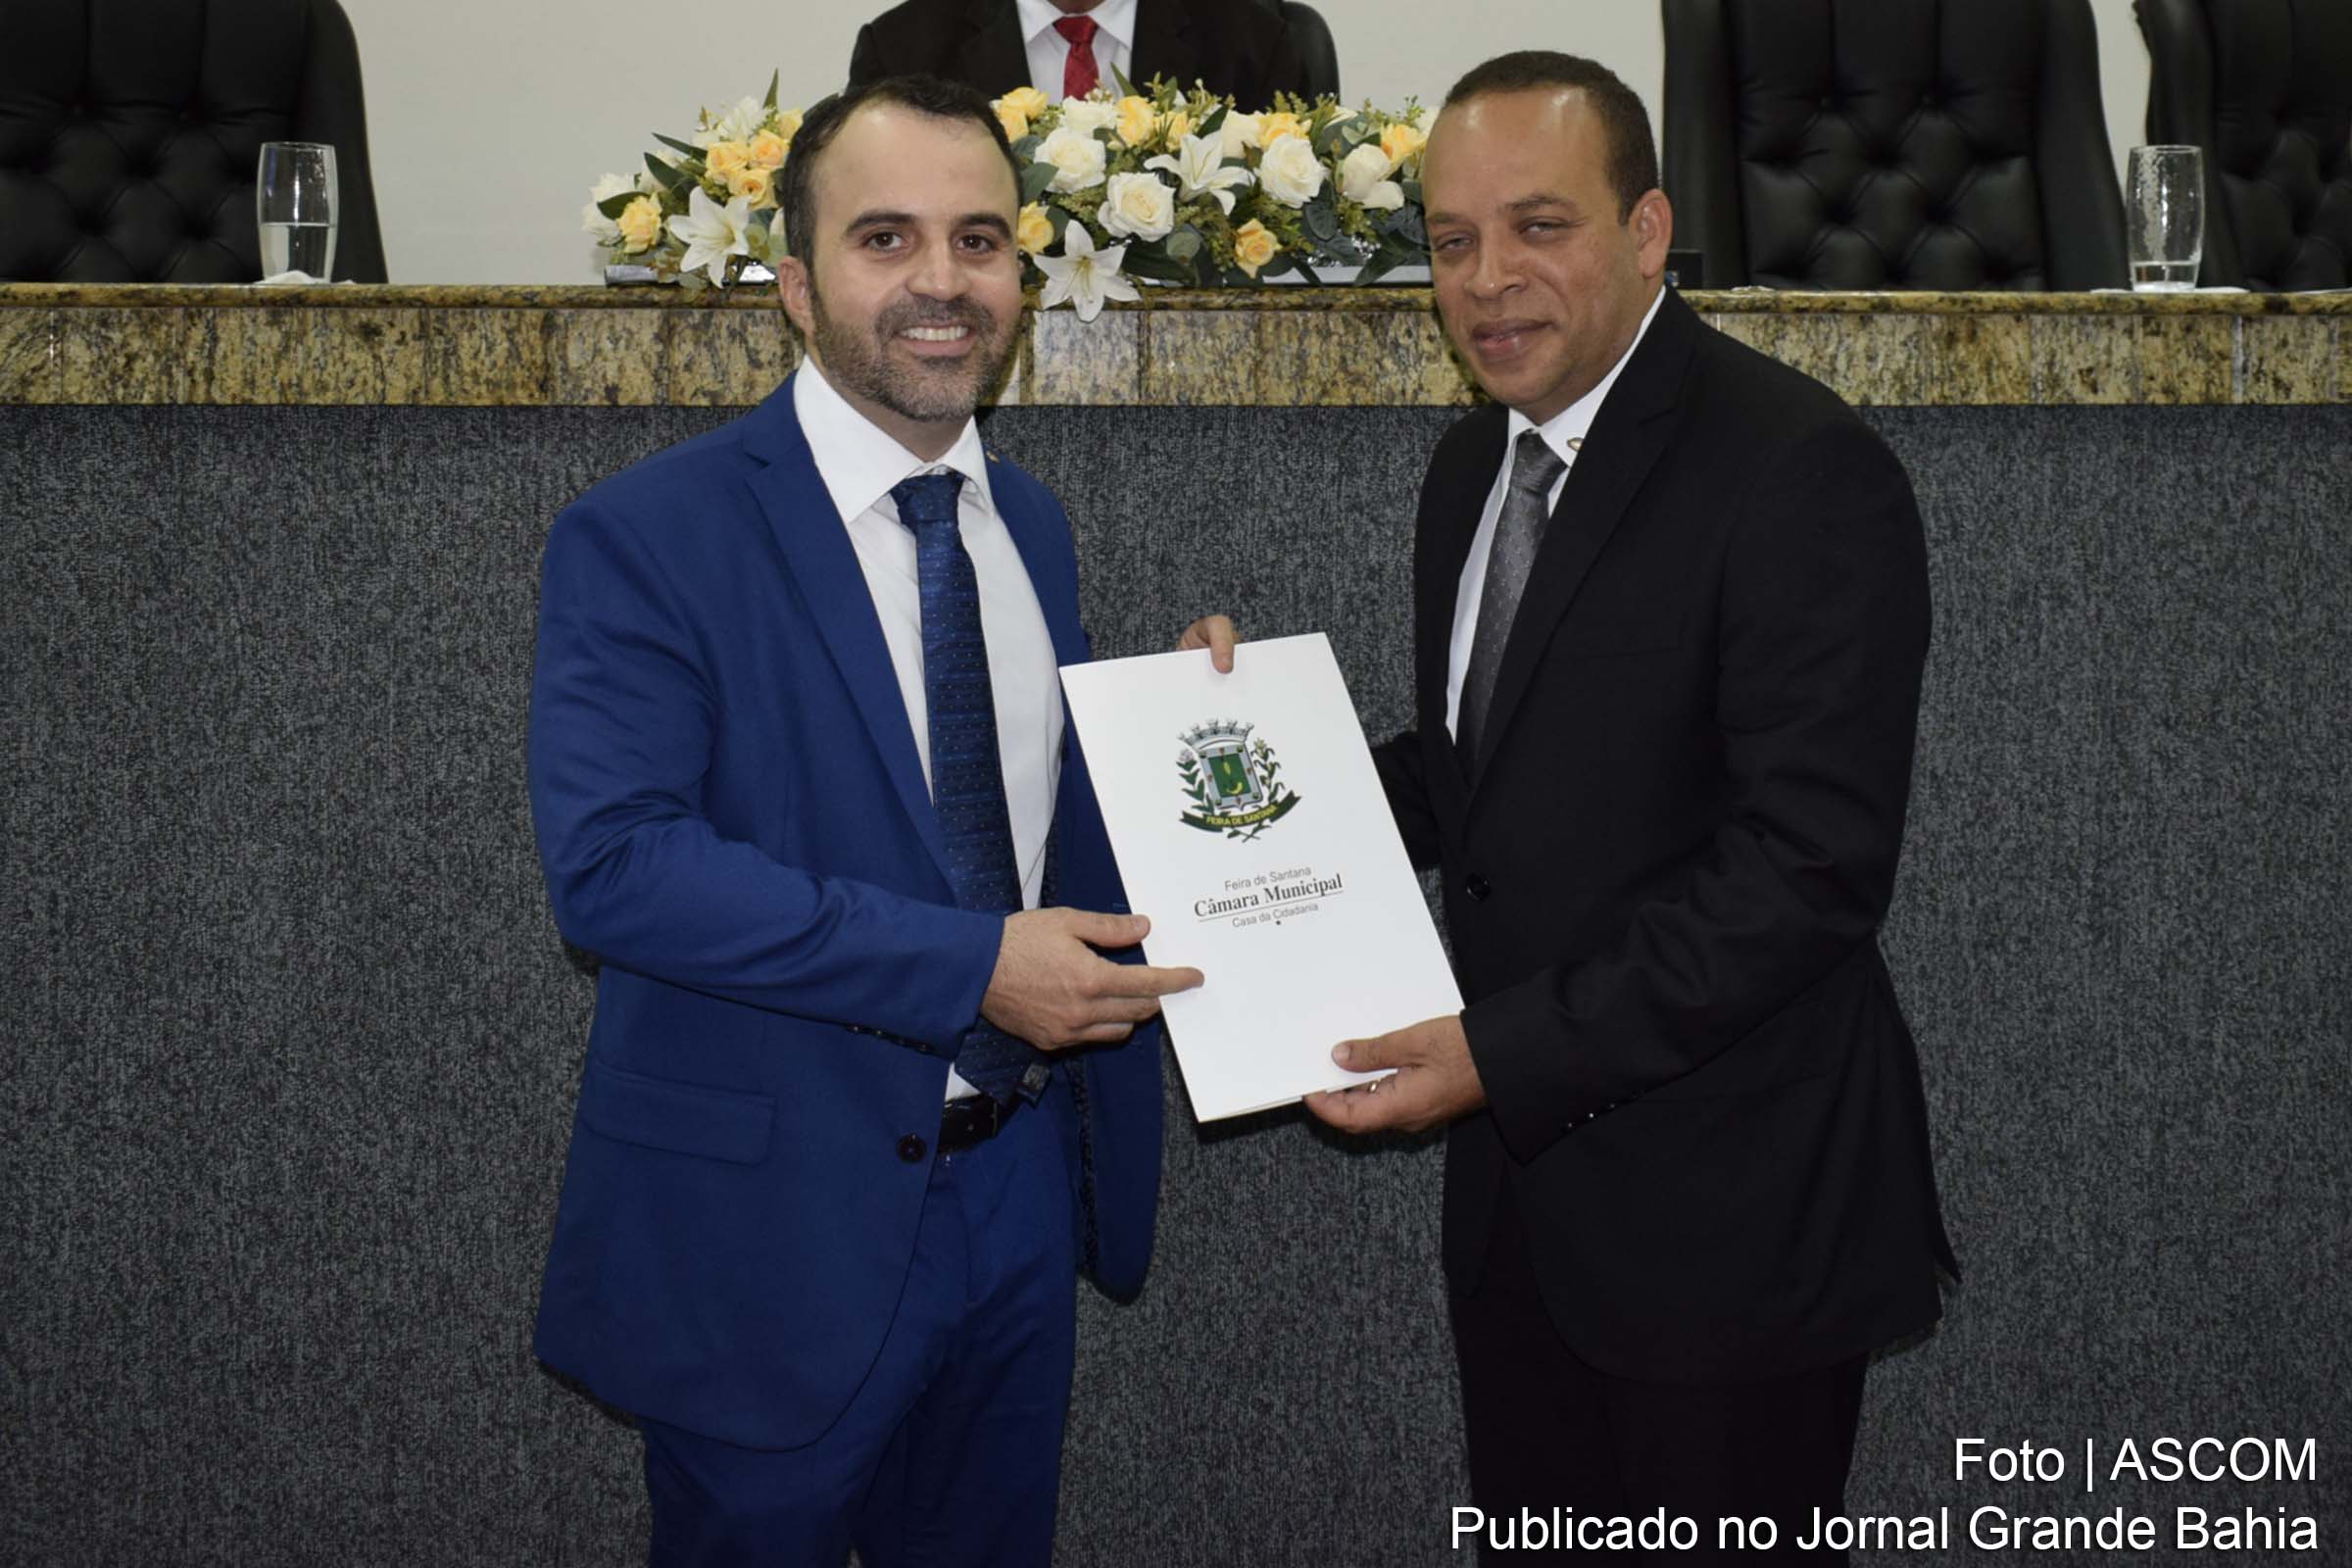 Defensor público Marcelo Santana Rocha recebeu durante sessão solene na Câmara Municipal de Feira de Santana, o título de Cidadão Feirense.